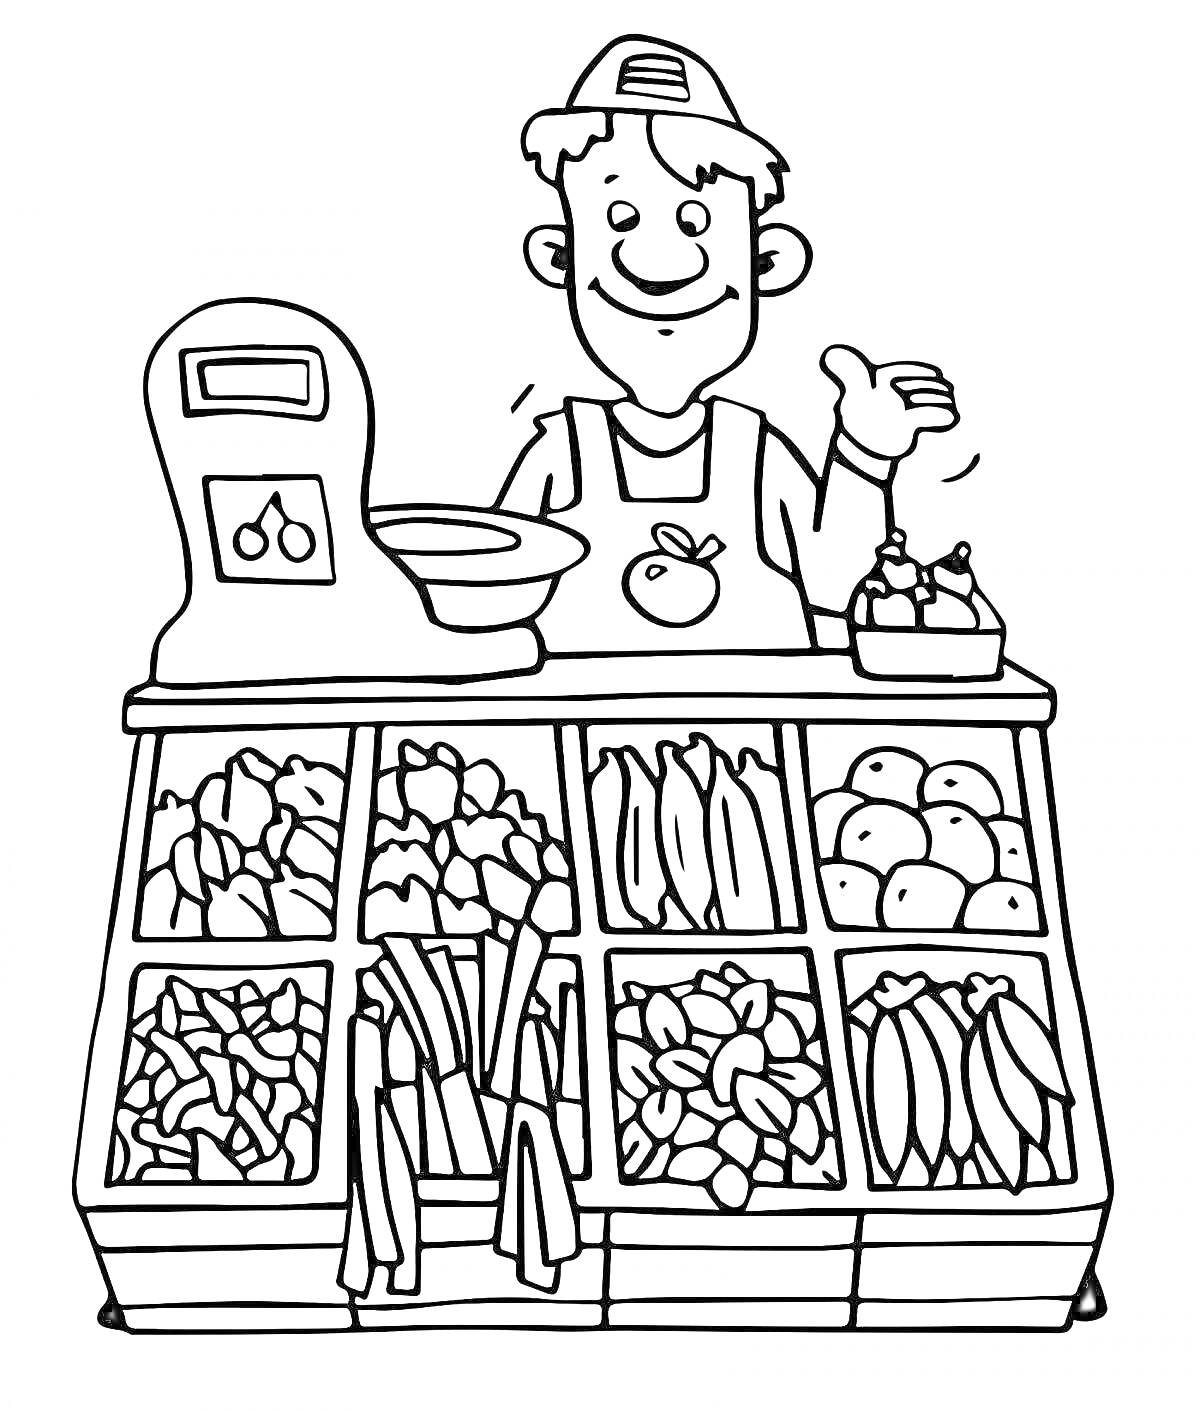 Продавец за прилавком с весами и овощами